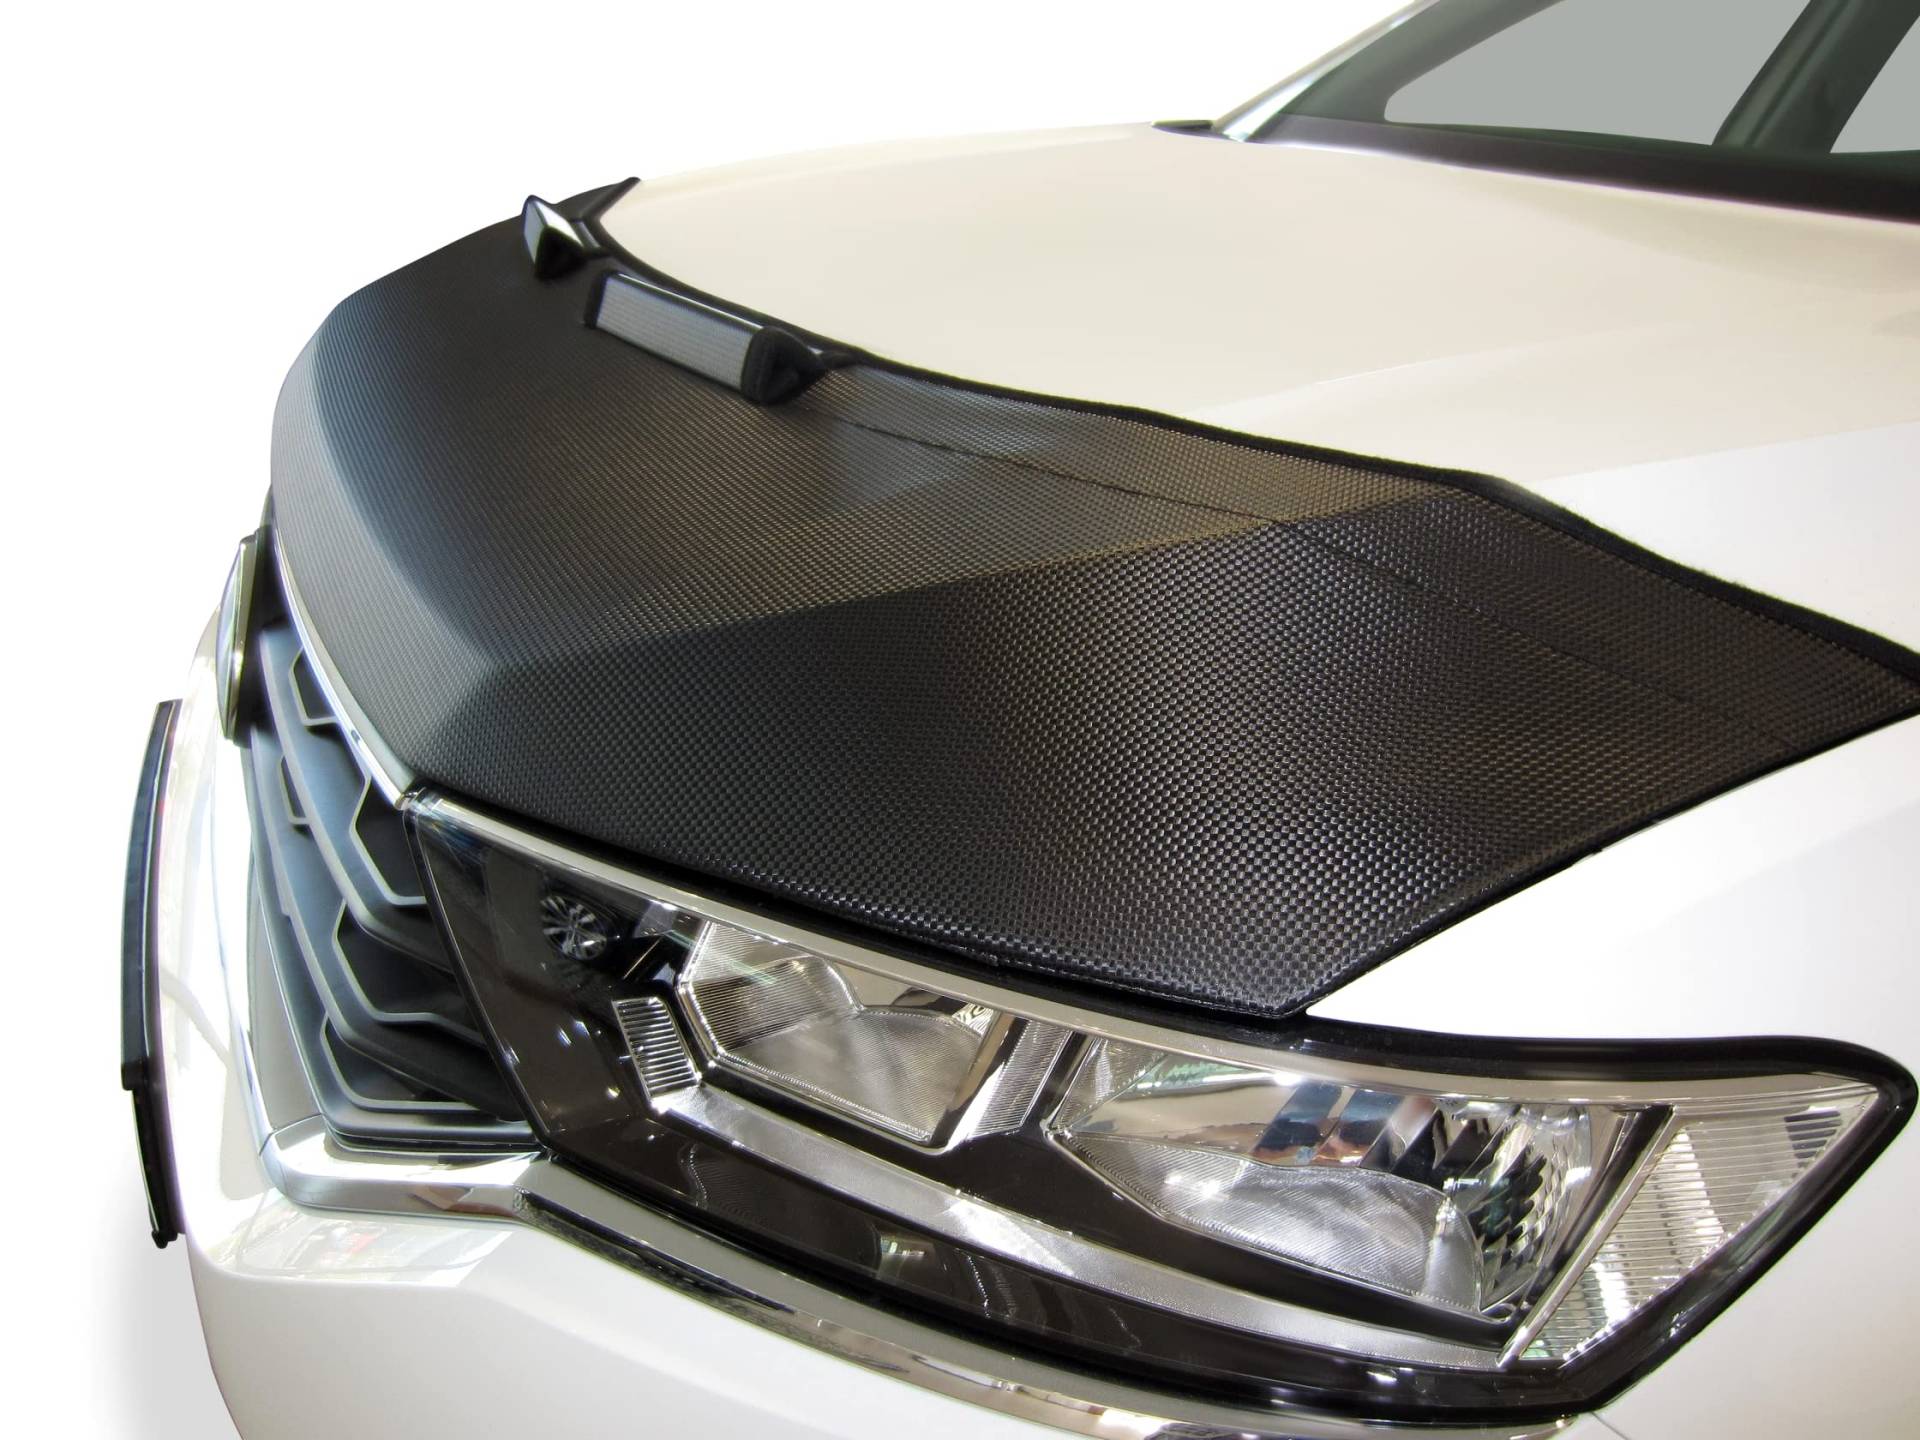 AB-00950 Carbon Optik Auto-BRA kompatibel mit Audi A4 B8 Bj. 2011-2015 Haubenbra Steinschlagschutz Tuning Bonnet Bra von AUTO-BRA